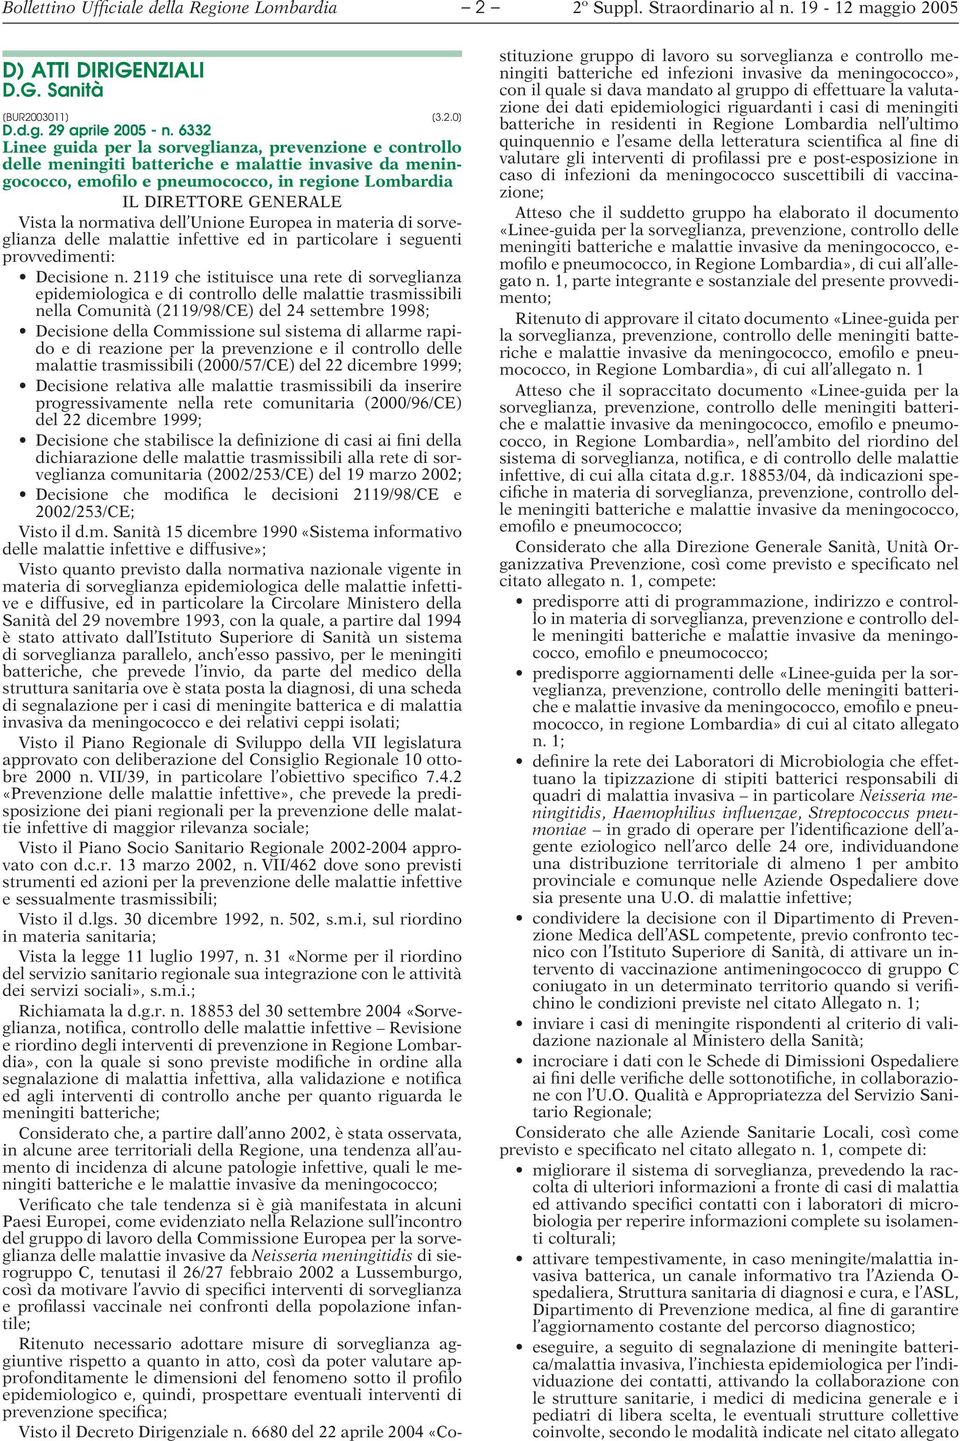 la normativa dell Unione Europea in materia di sorveglianza delle malattie infettive ed in particolare i seguenti provvedimenti: Decisione n.